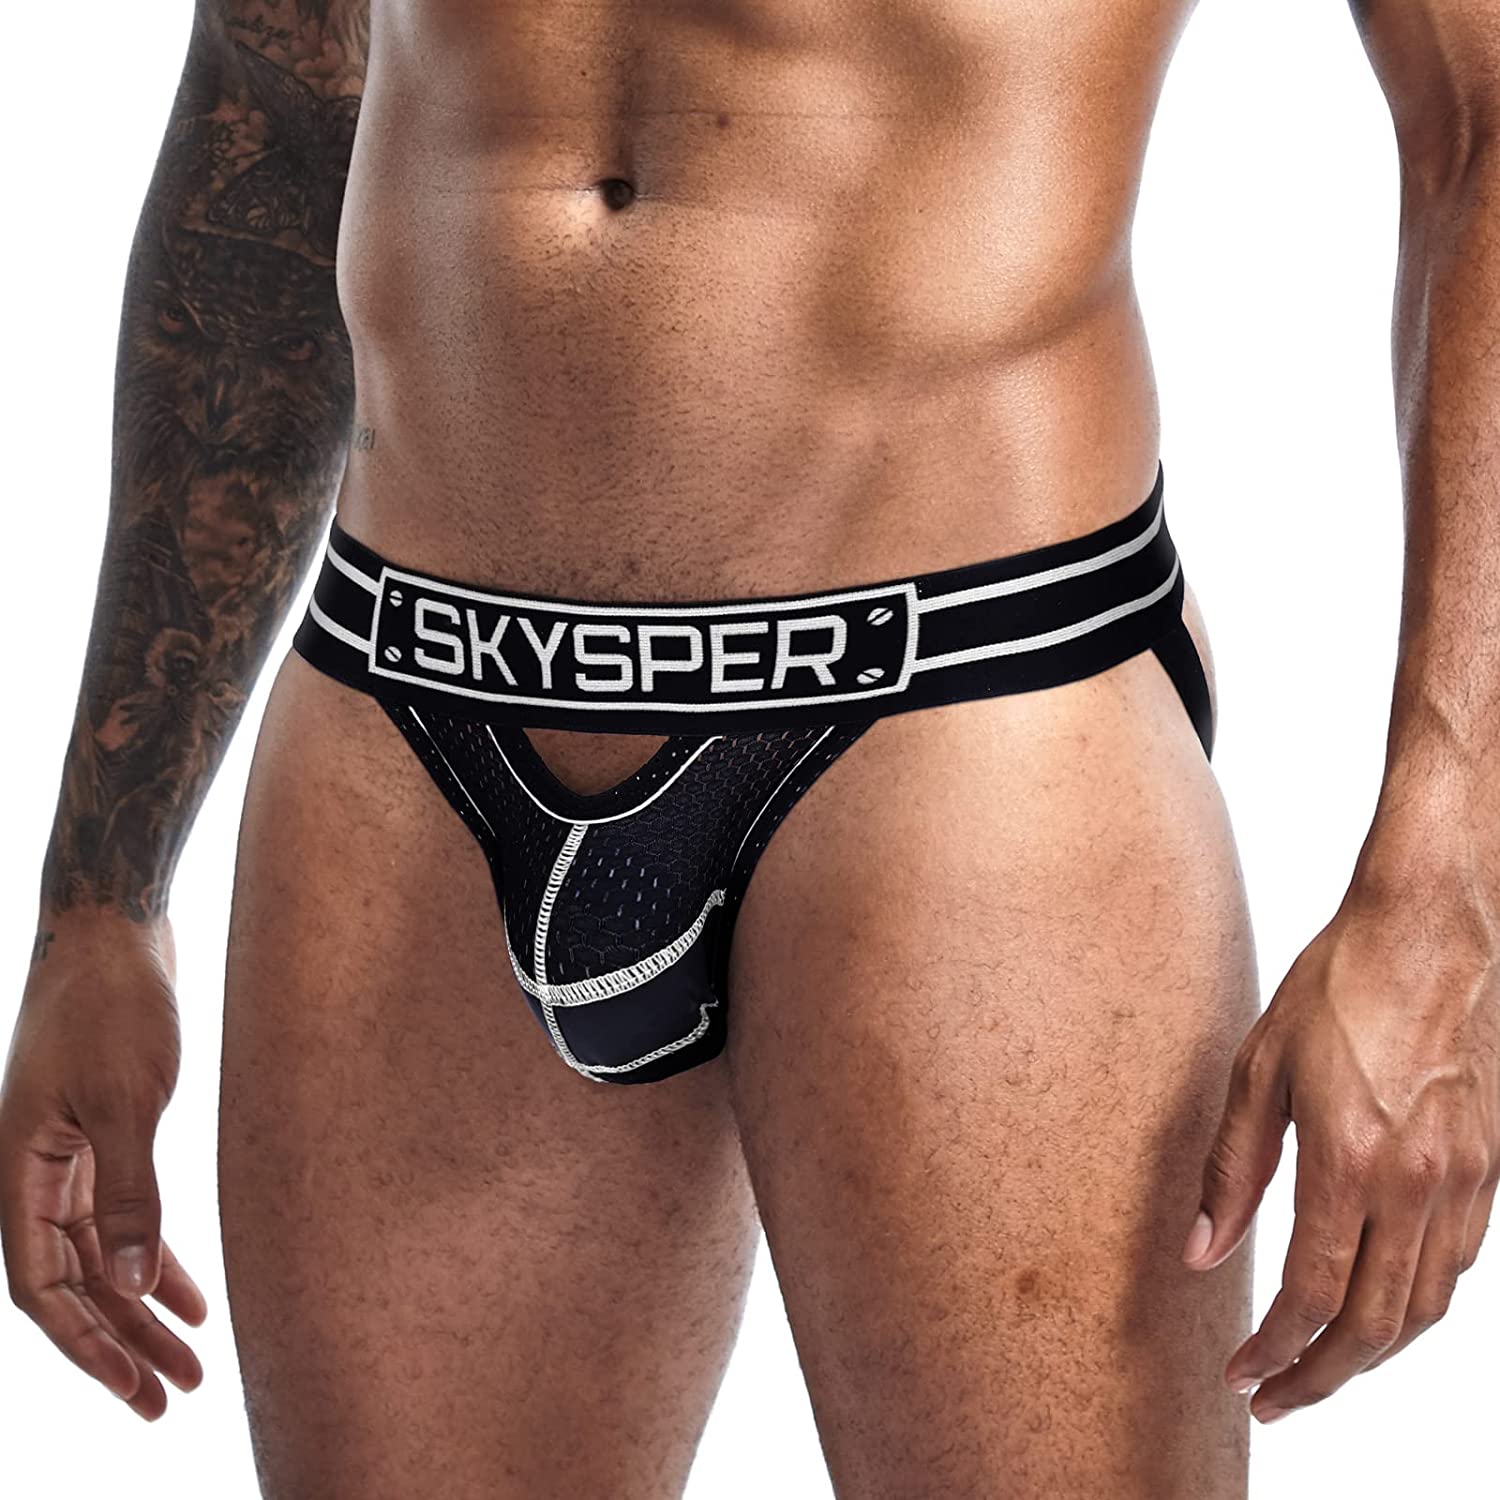 Athletic Supporters Jock Straps Male Underwear for Men SKYSPER Mens Jockstrap Underwear 